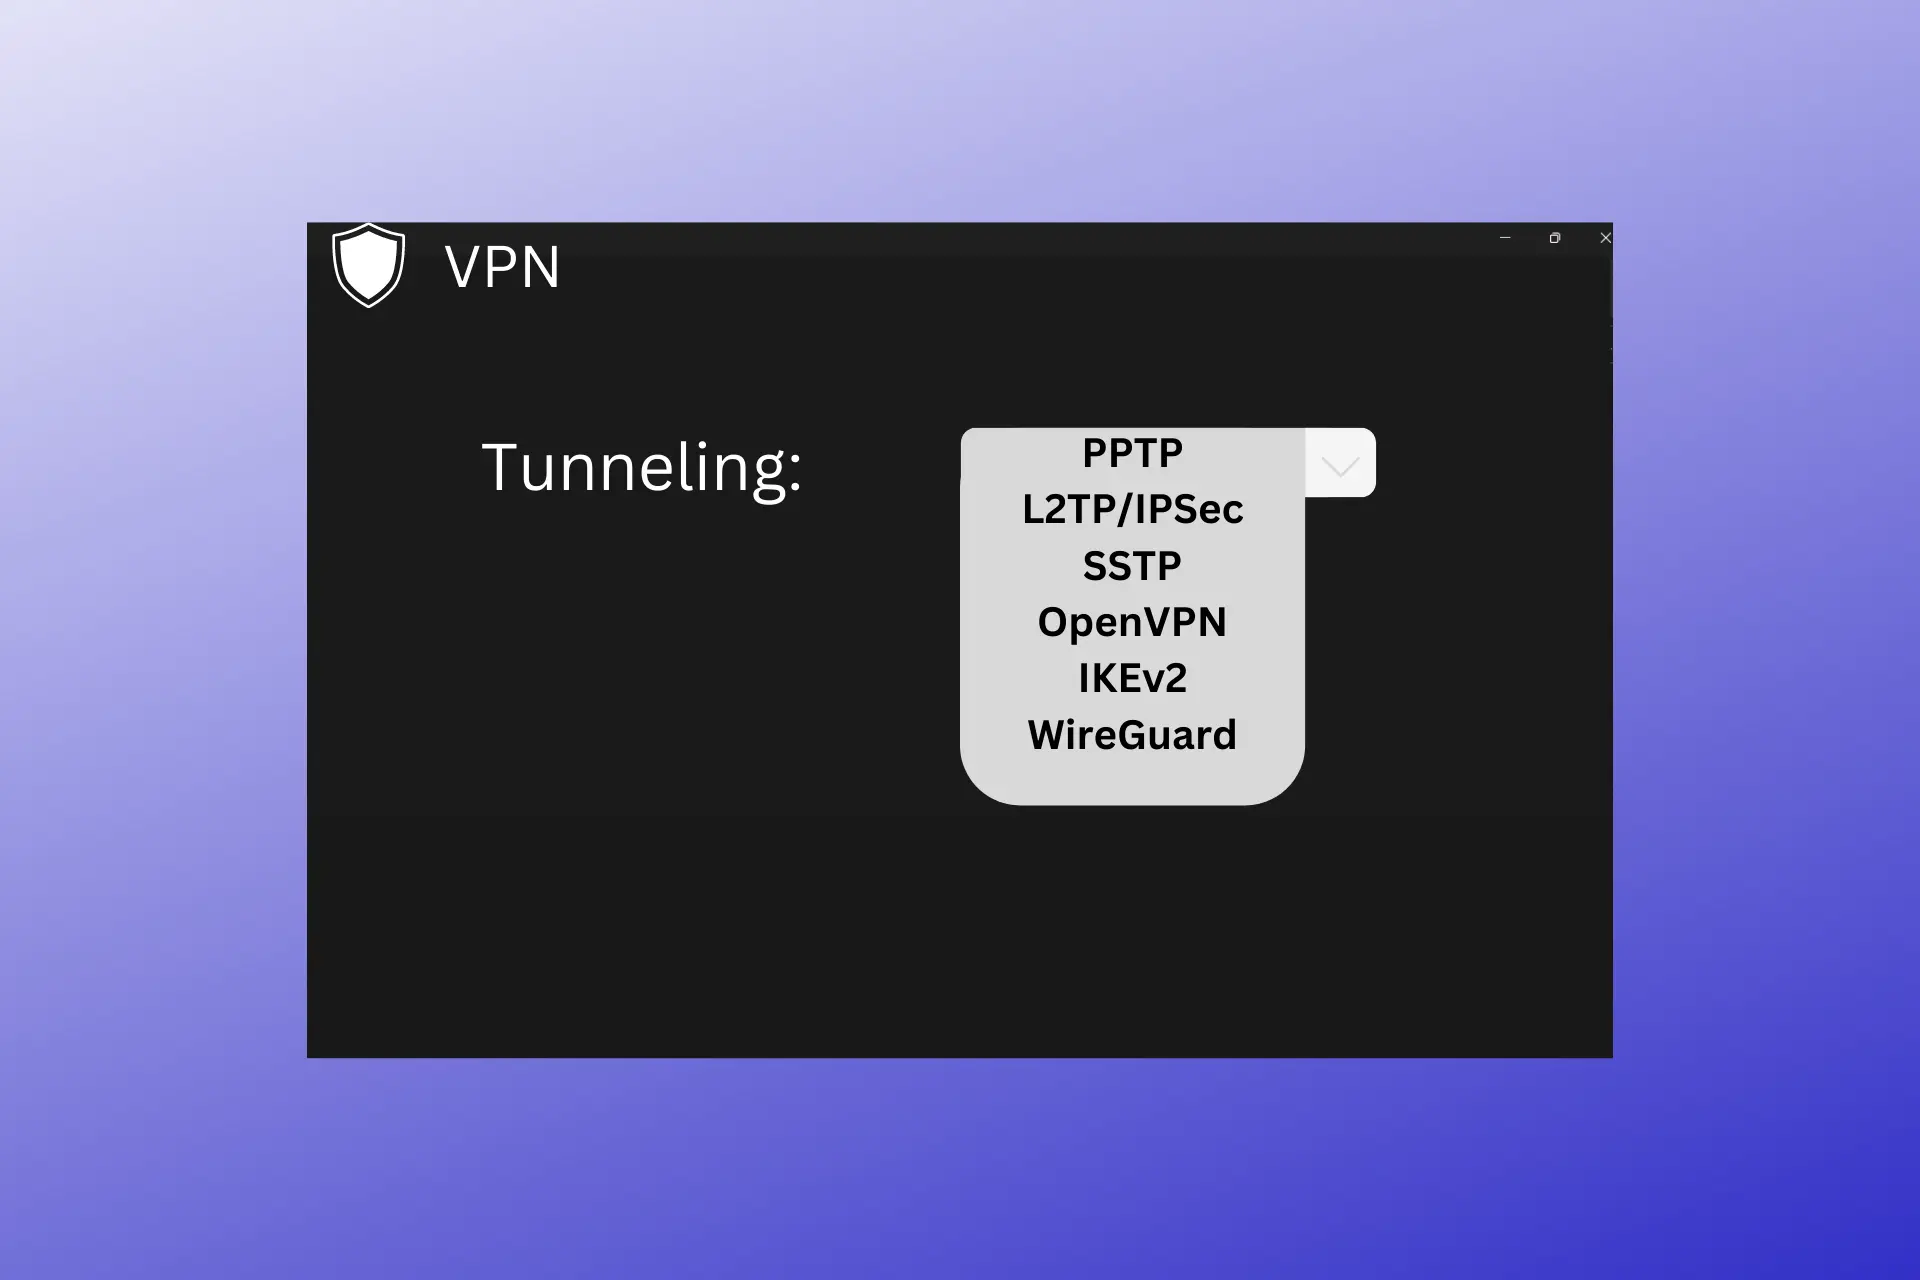 vpn tunneling type